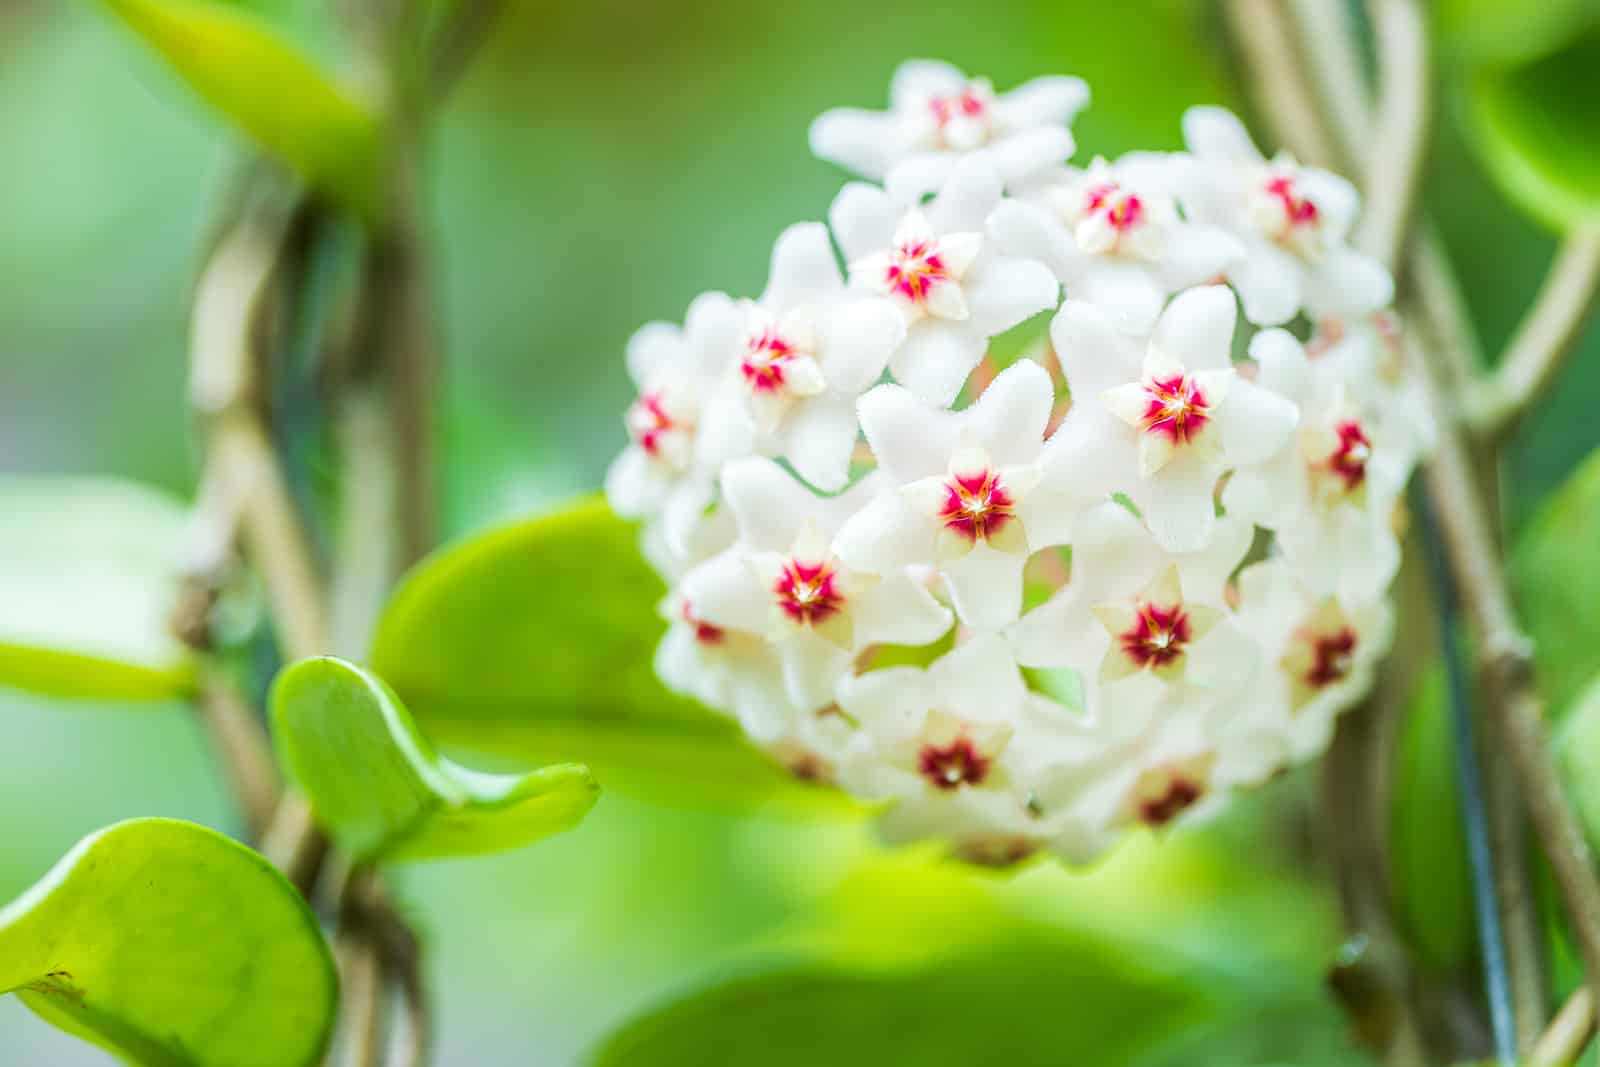 hoya fungii white flower